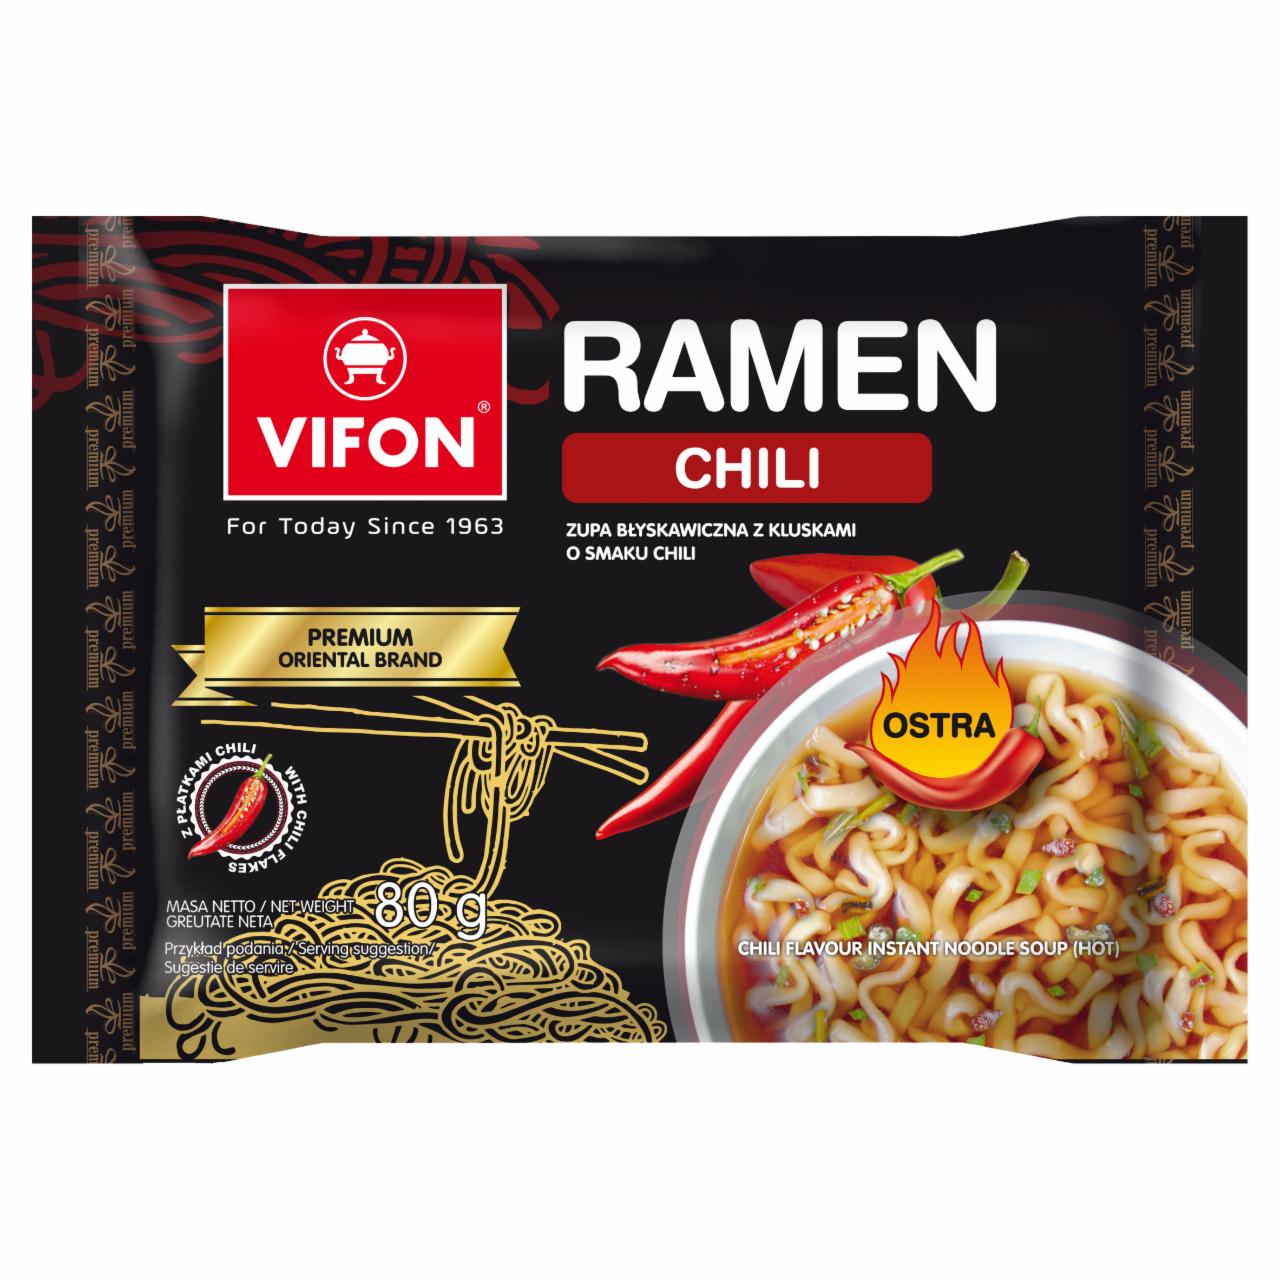 Zdjęcia - Vifon Ramen Zupa z kluskami o smaku chili 80 g